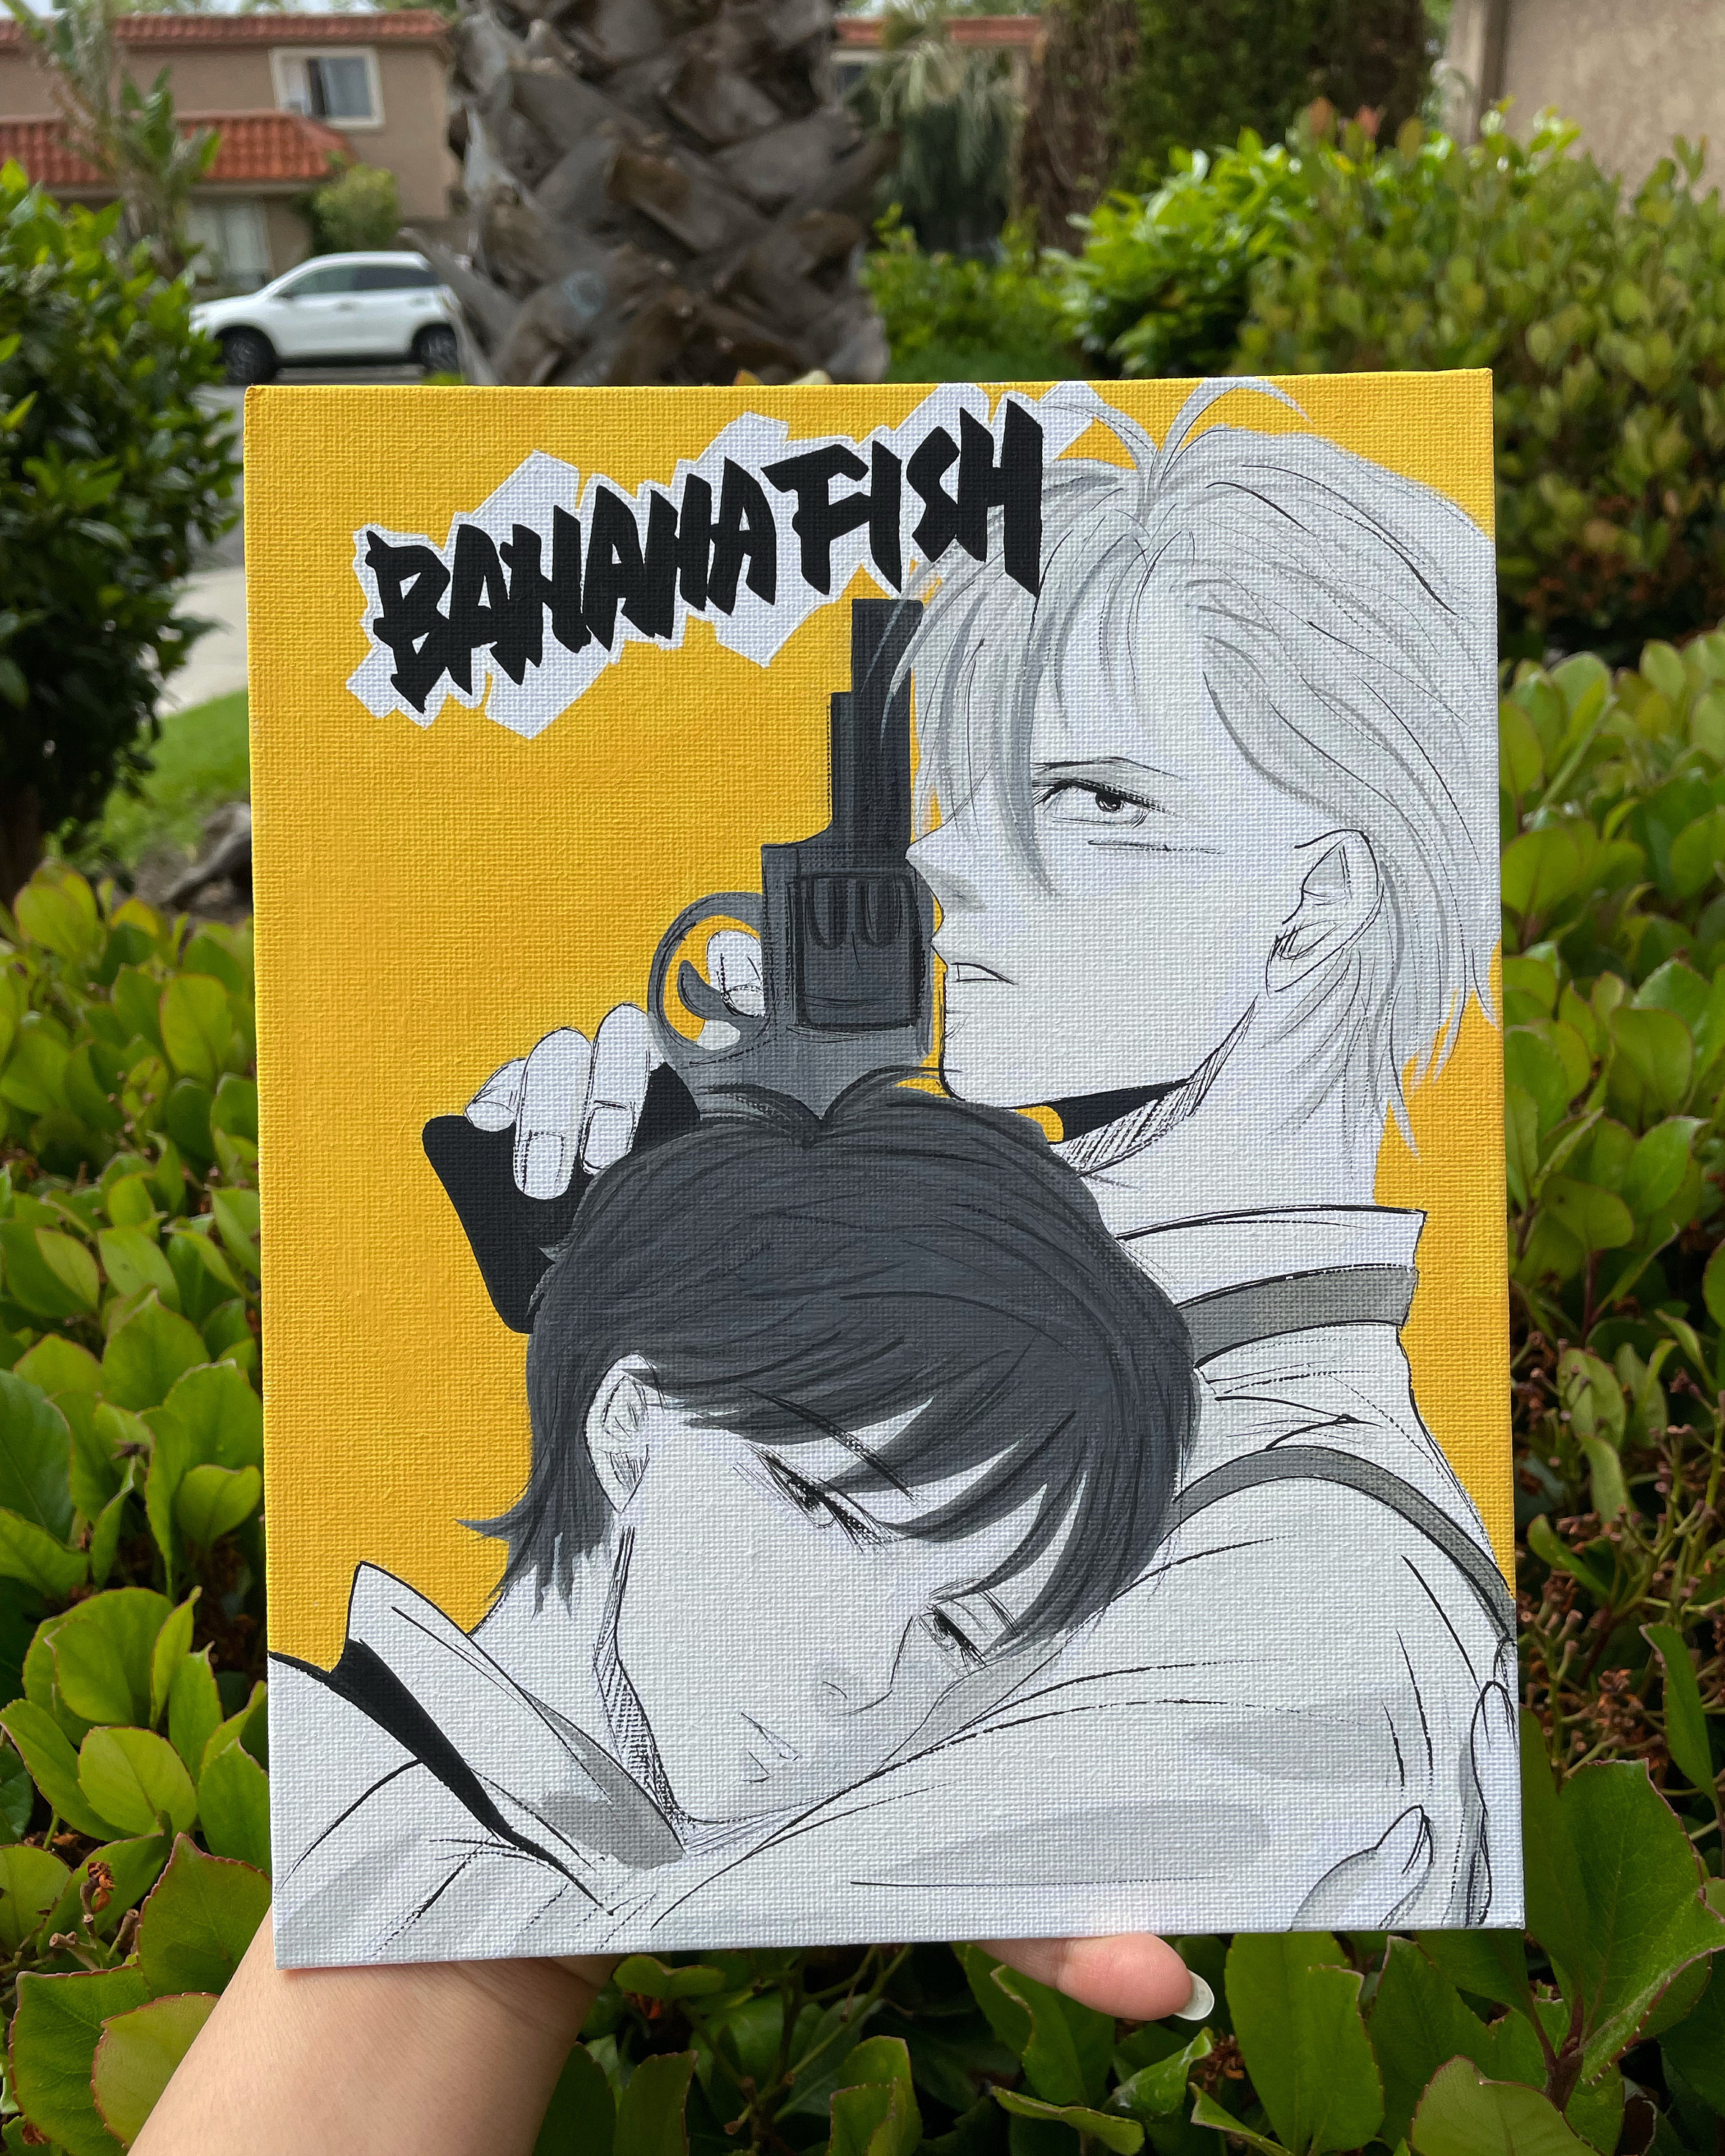 Banana Fish  Anime printables, Anime films, Retro poster